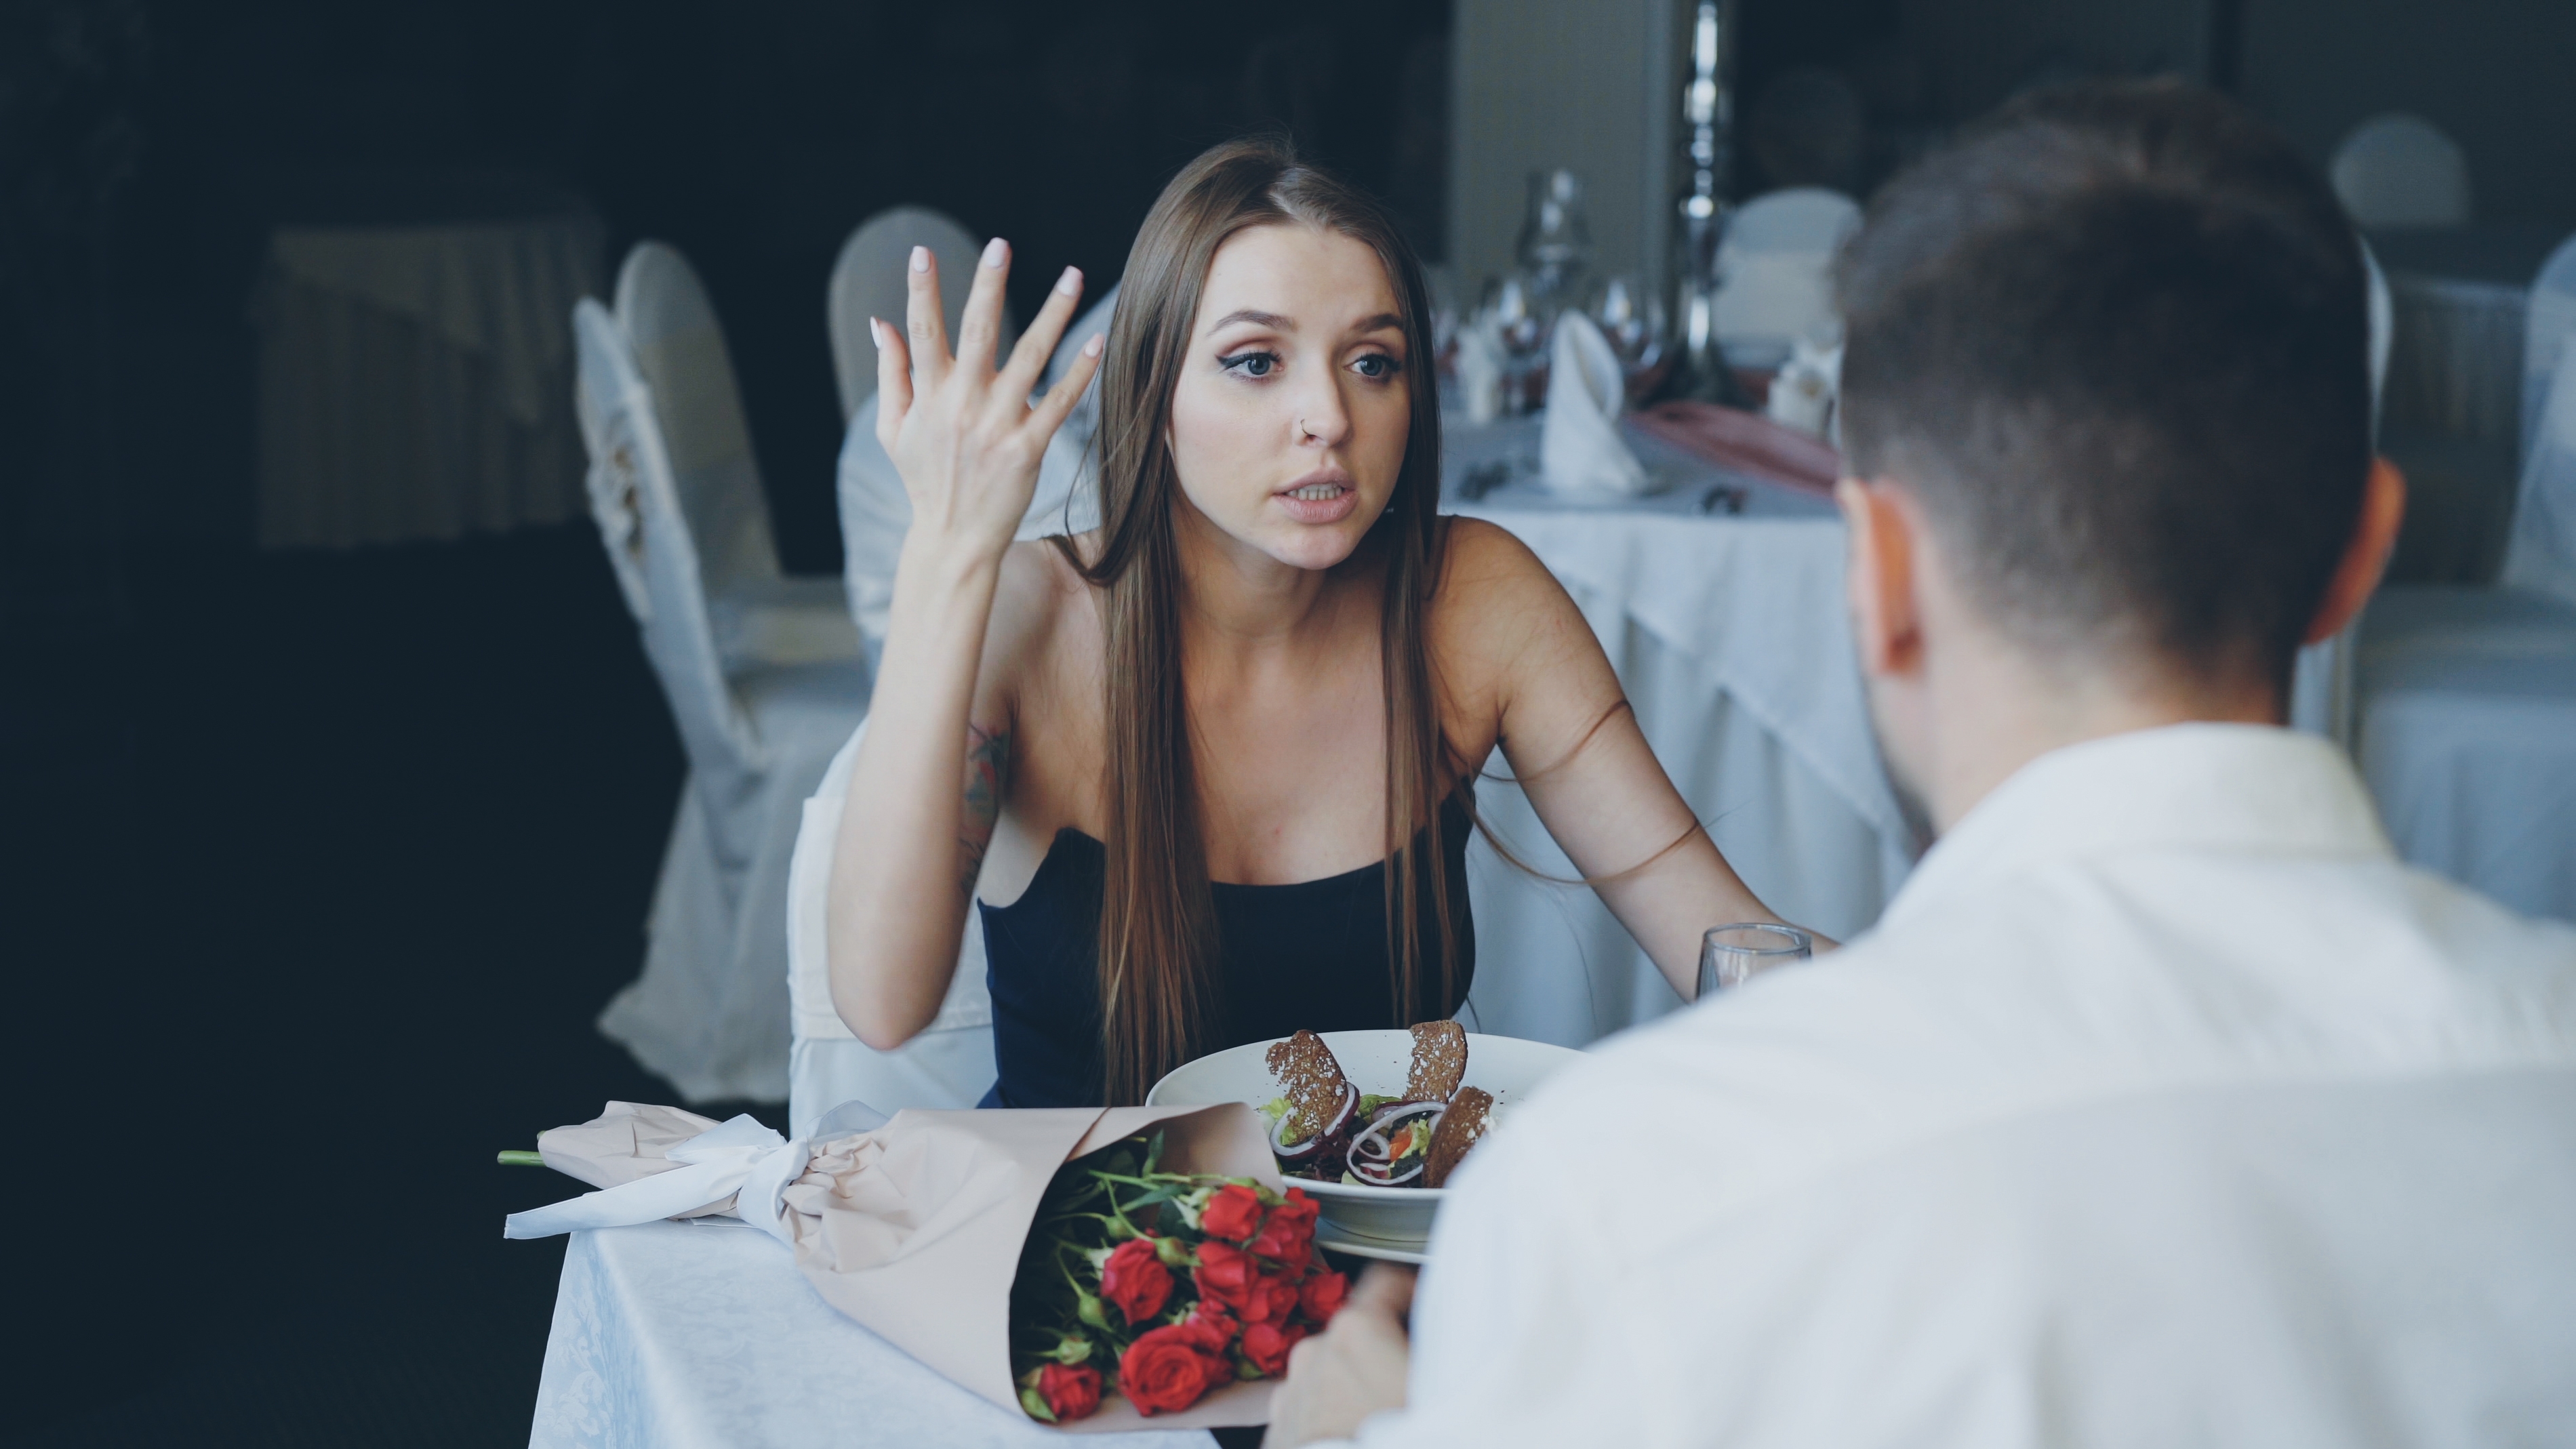 Um casal discutindo em um jantar |  Fonte: Shutterstock